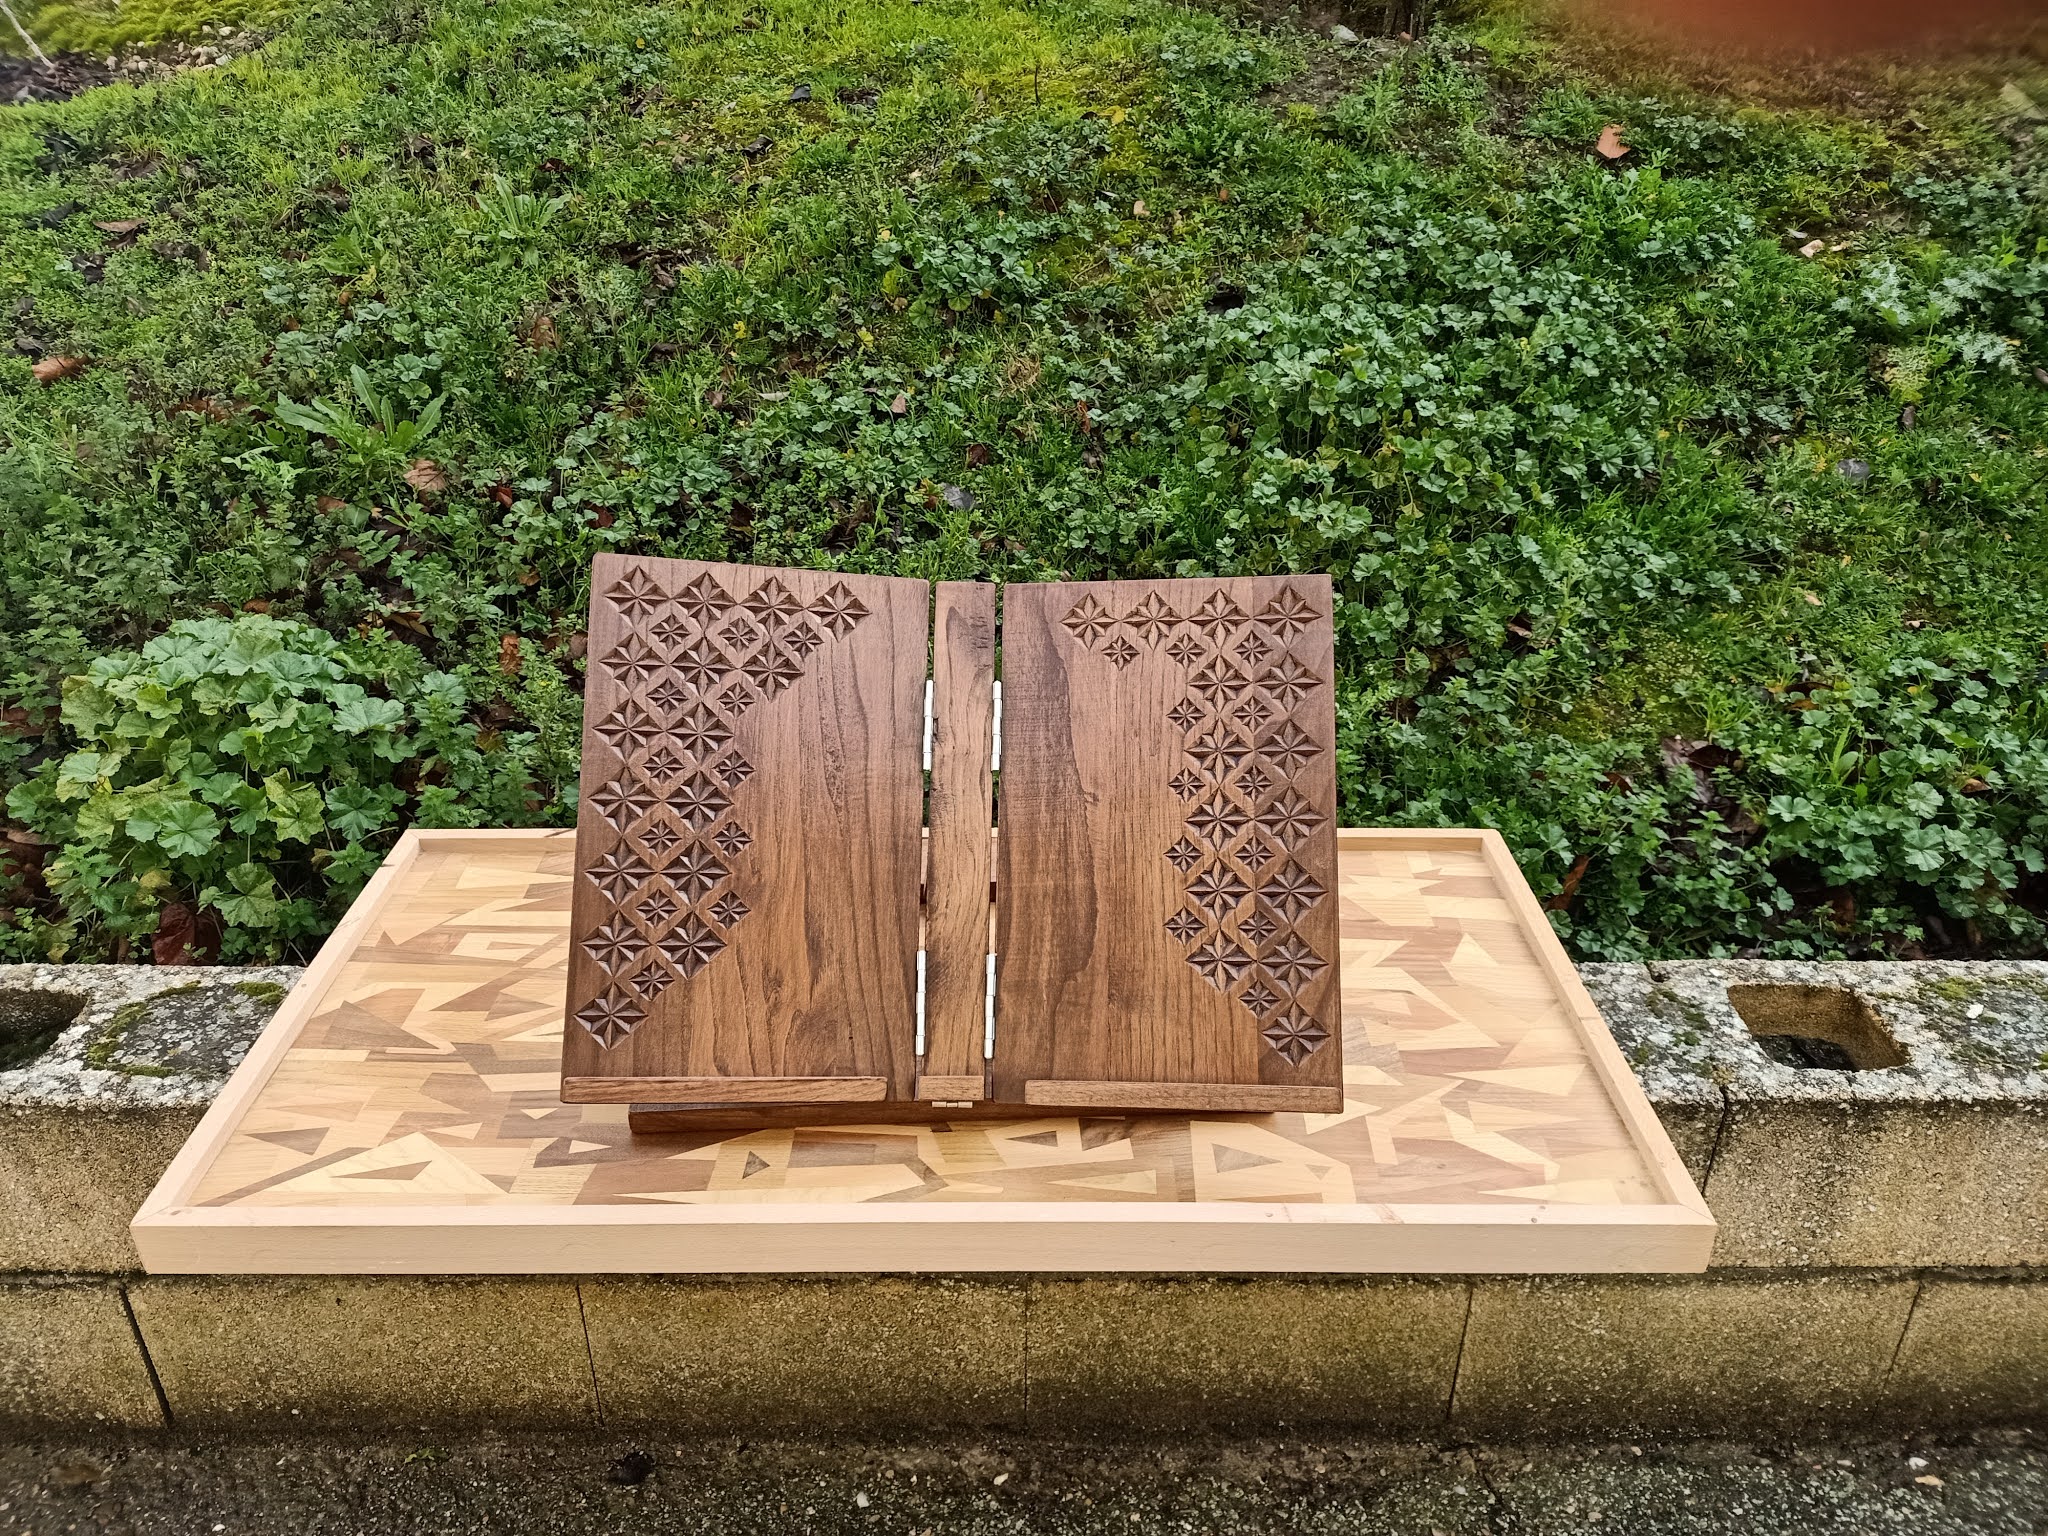 Atriles de madera: dos diseños, sencillo y decorado con talla